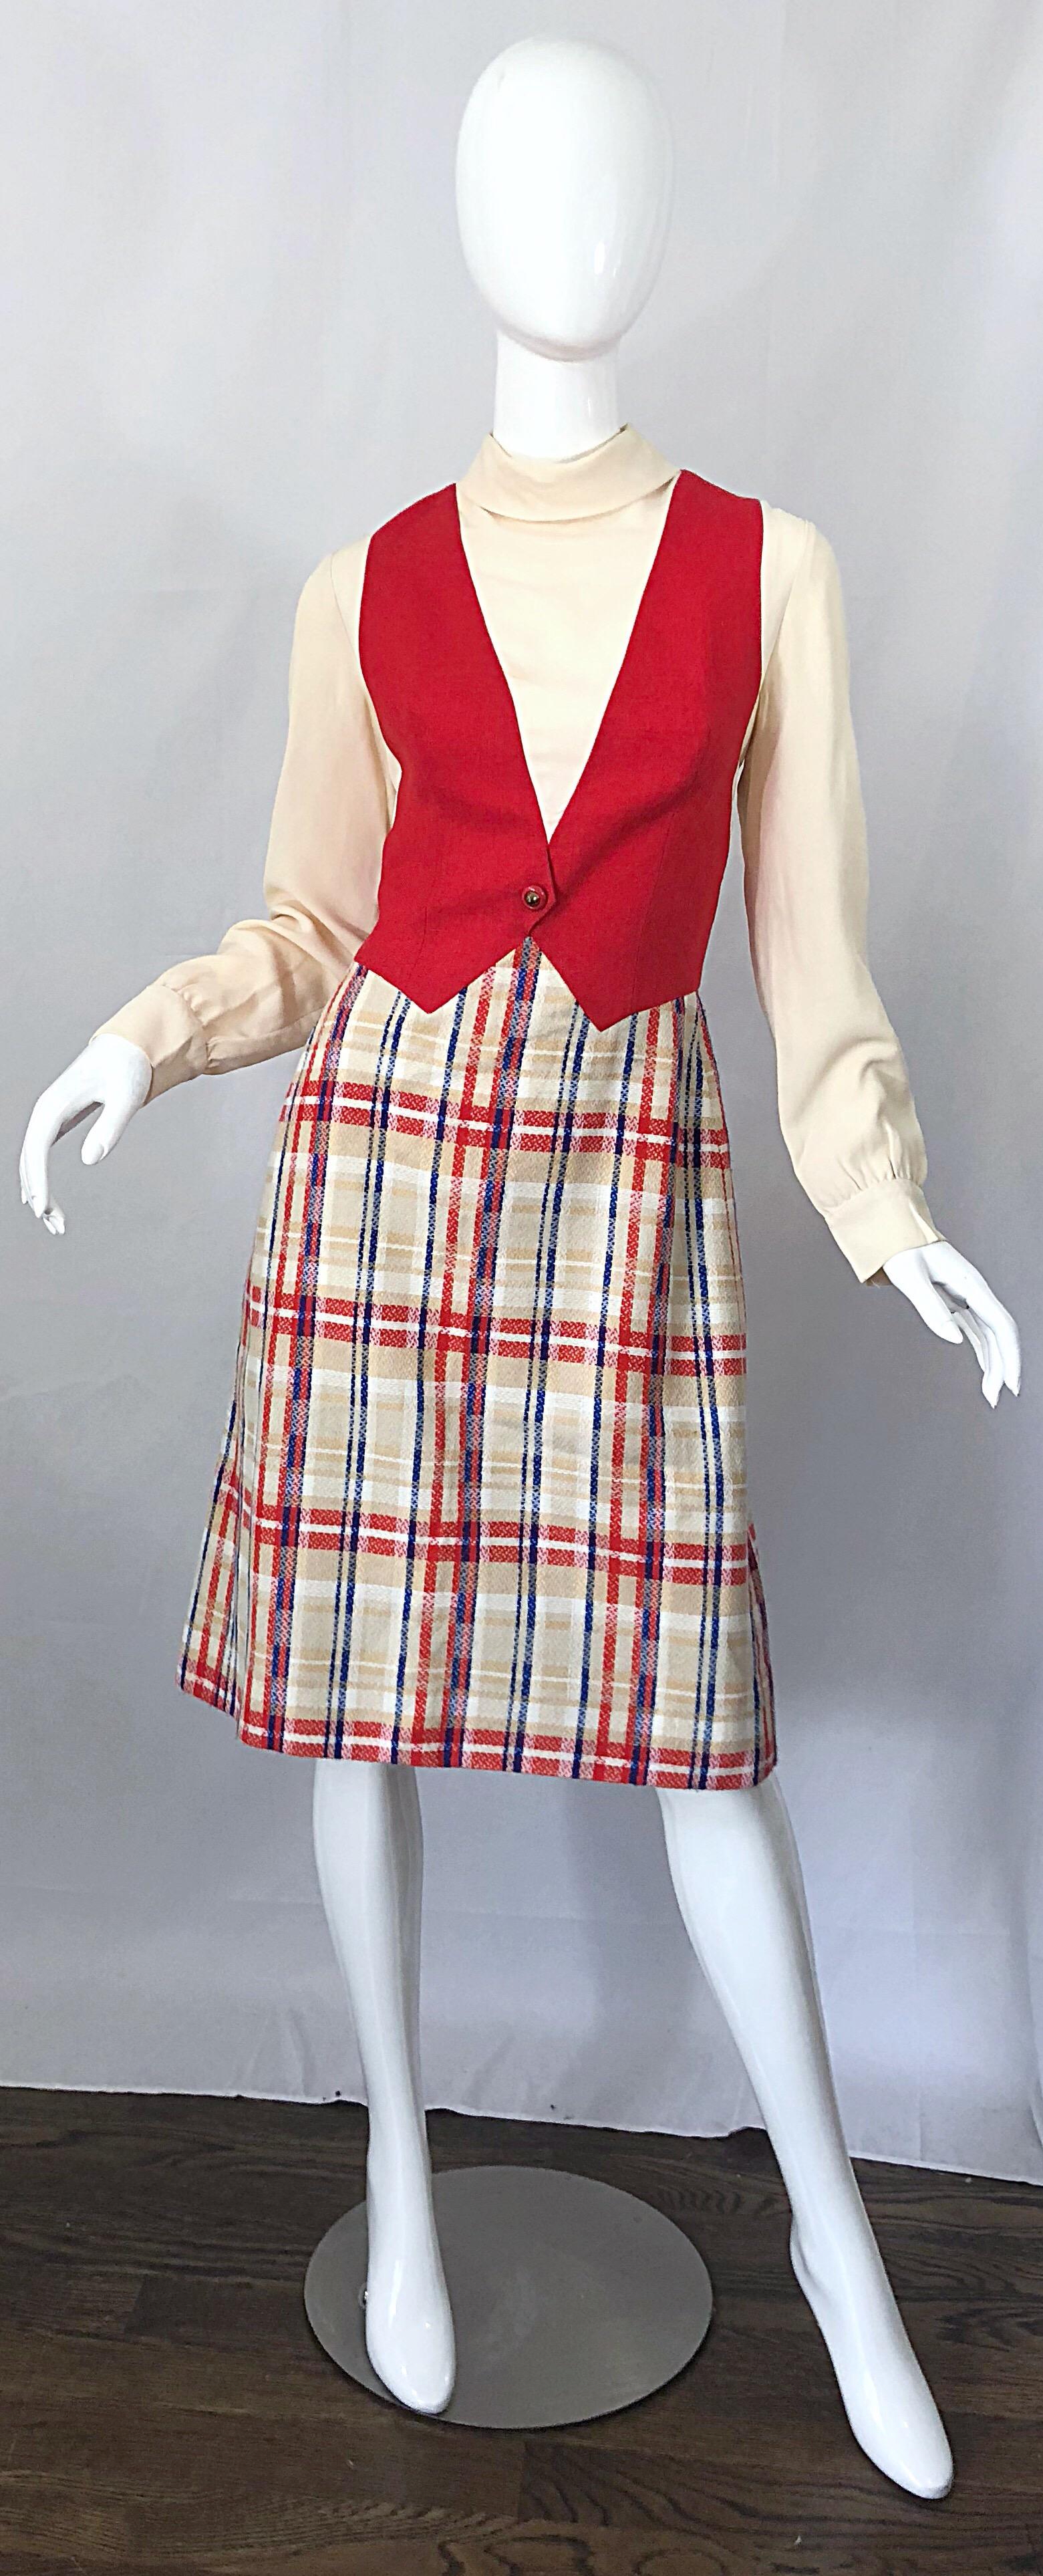 Chic Mitte der 1960er Jahre PAT SANDLER rot, weiß (Elfenbein) und blau trompe l'oeil lange Ärmel A-Linie Kleid! Das hochgeschlossene elfenbeinfarbene Kreppmieder ist mit einer angenähten Weste versehen, die den Anschein erweckt, dass das Kleid aus